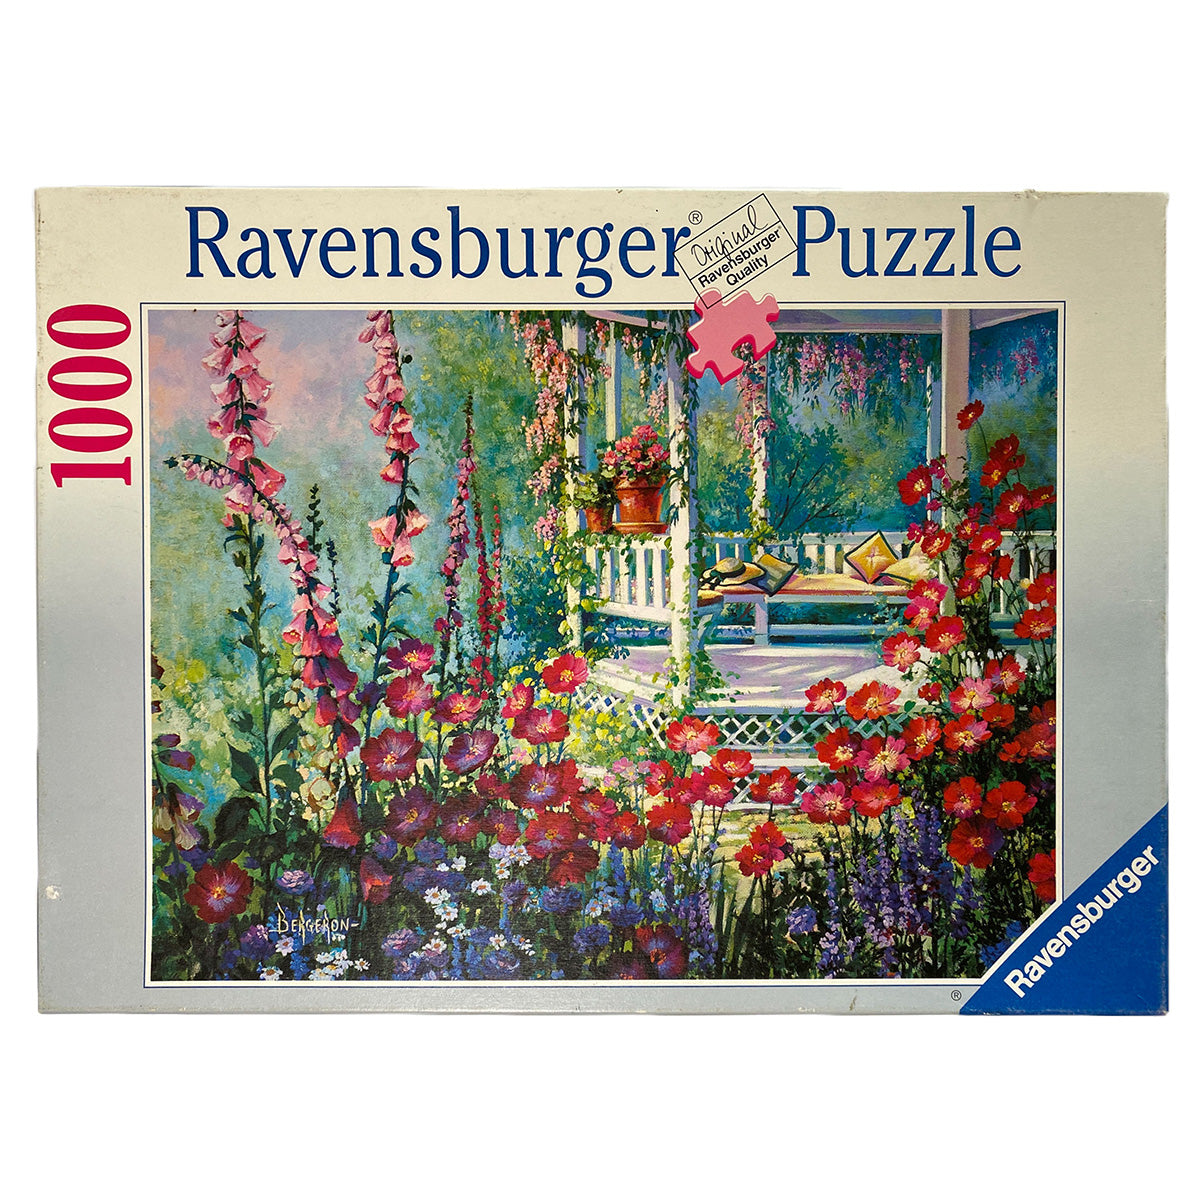 Photo of box of Pavilion Amongst Flowers Ravensburger puzzle.